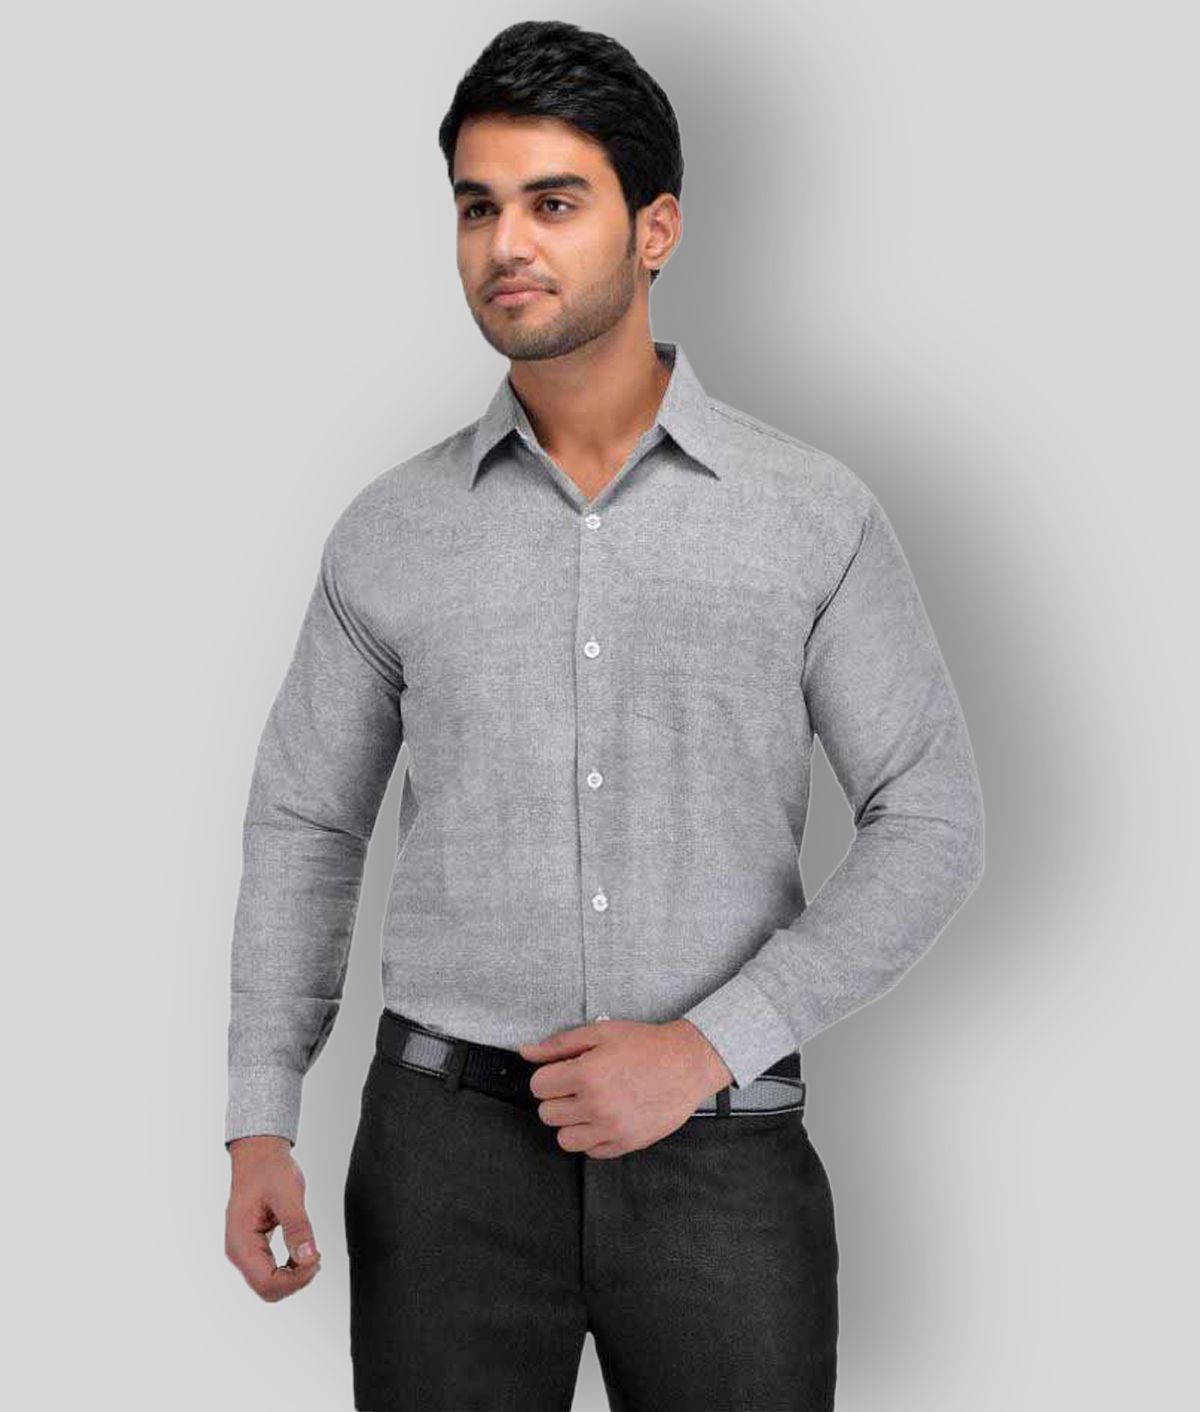     			DESHBANDHU DBK - Grey Cotton Regular Fit Men's Formal Shirt (Pack of 1)